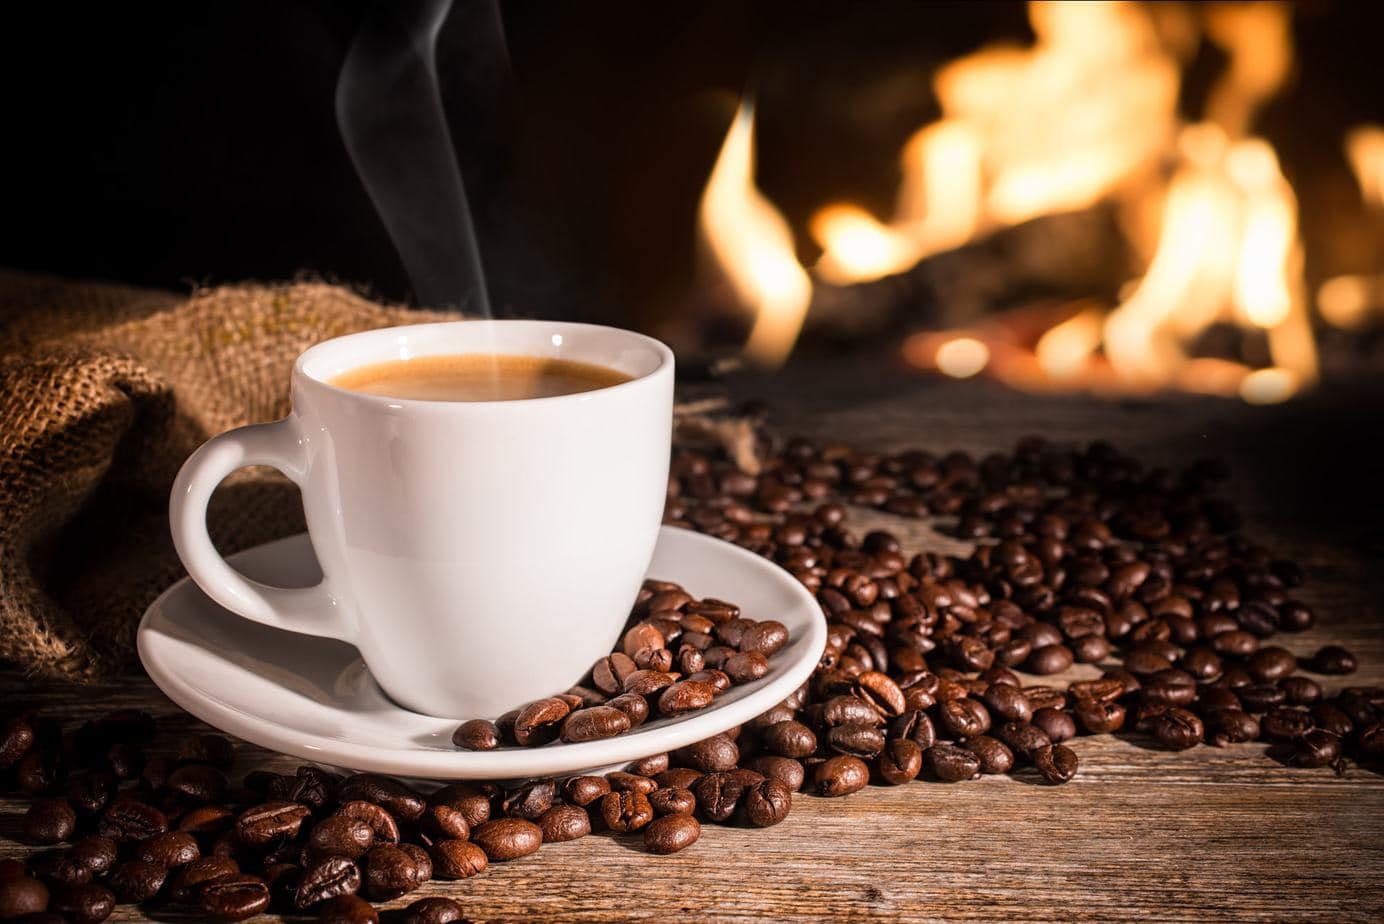 Café frío versus café caliente: ¿realmente importa la temperatura?